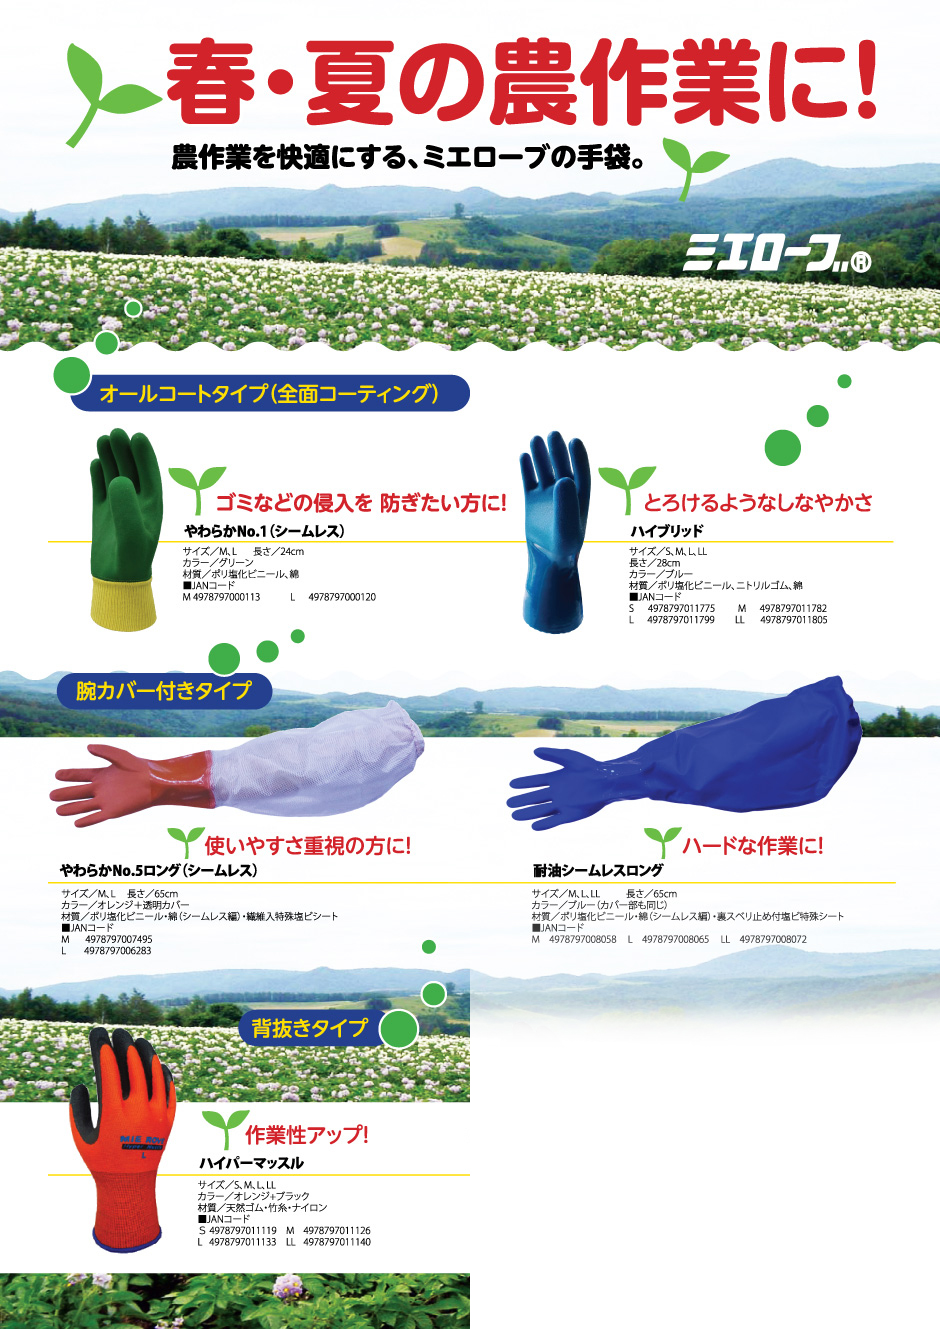 春・夏の農作業を快適にする、ミエローブの手袋